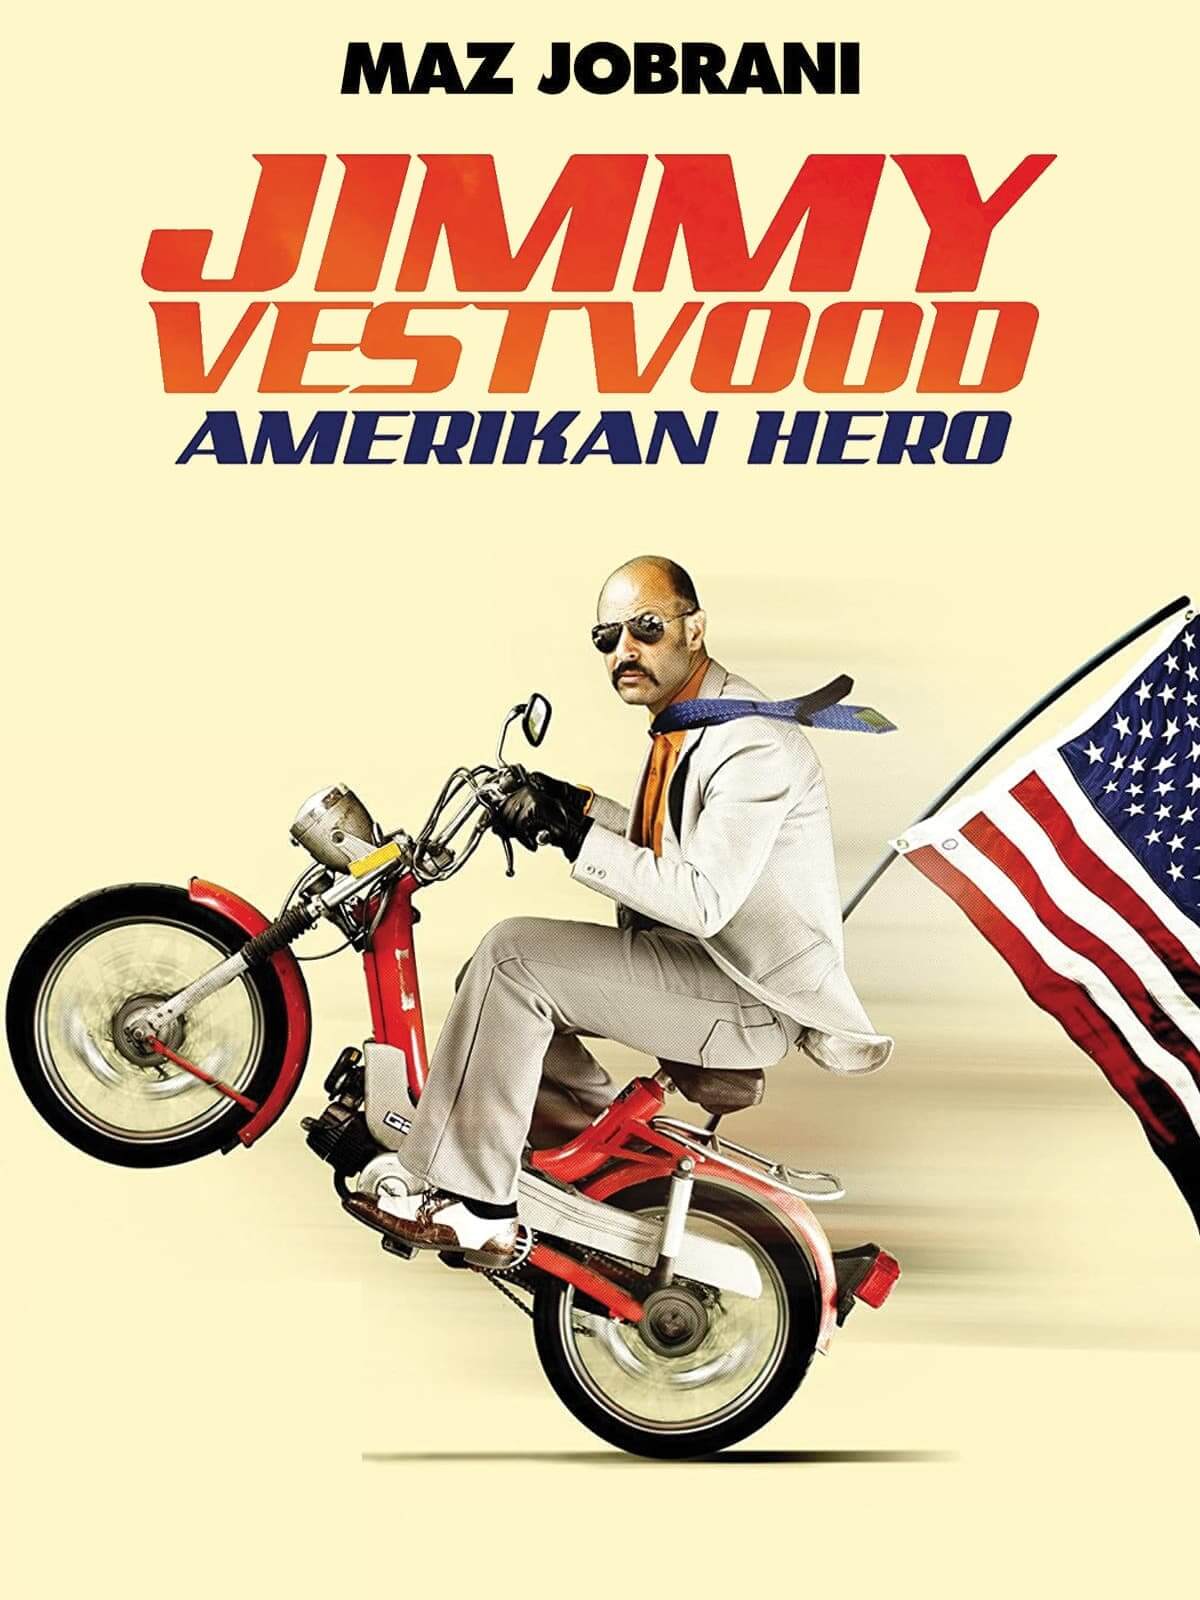 جیمی وست‌وود: قهرمان آمریکایی (Jimmy Vestvood: Amerikan Hero)